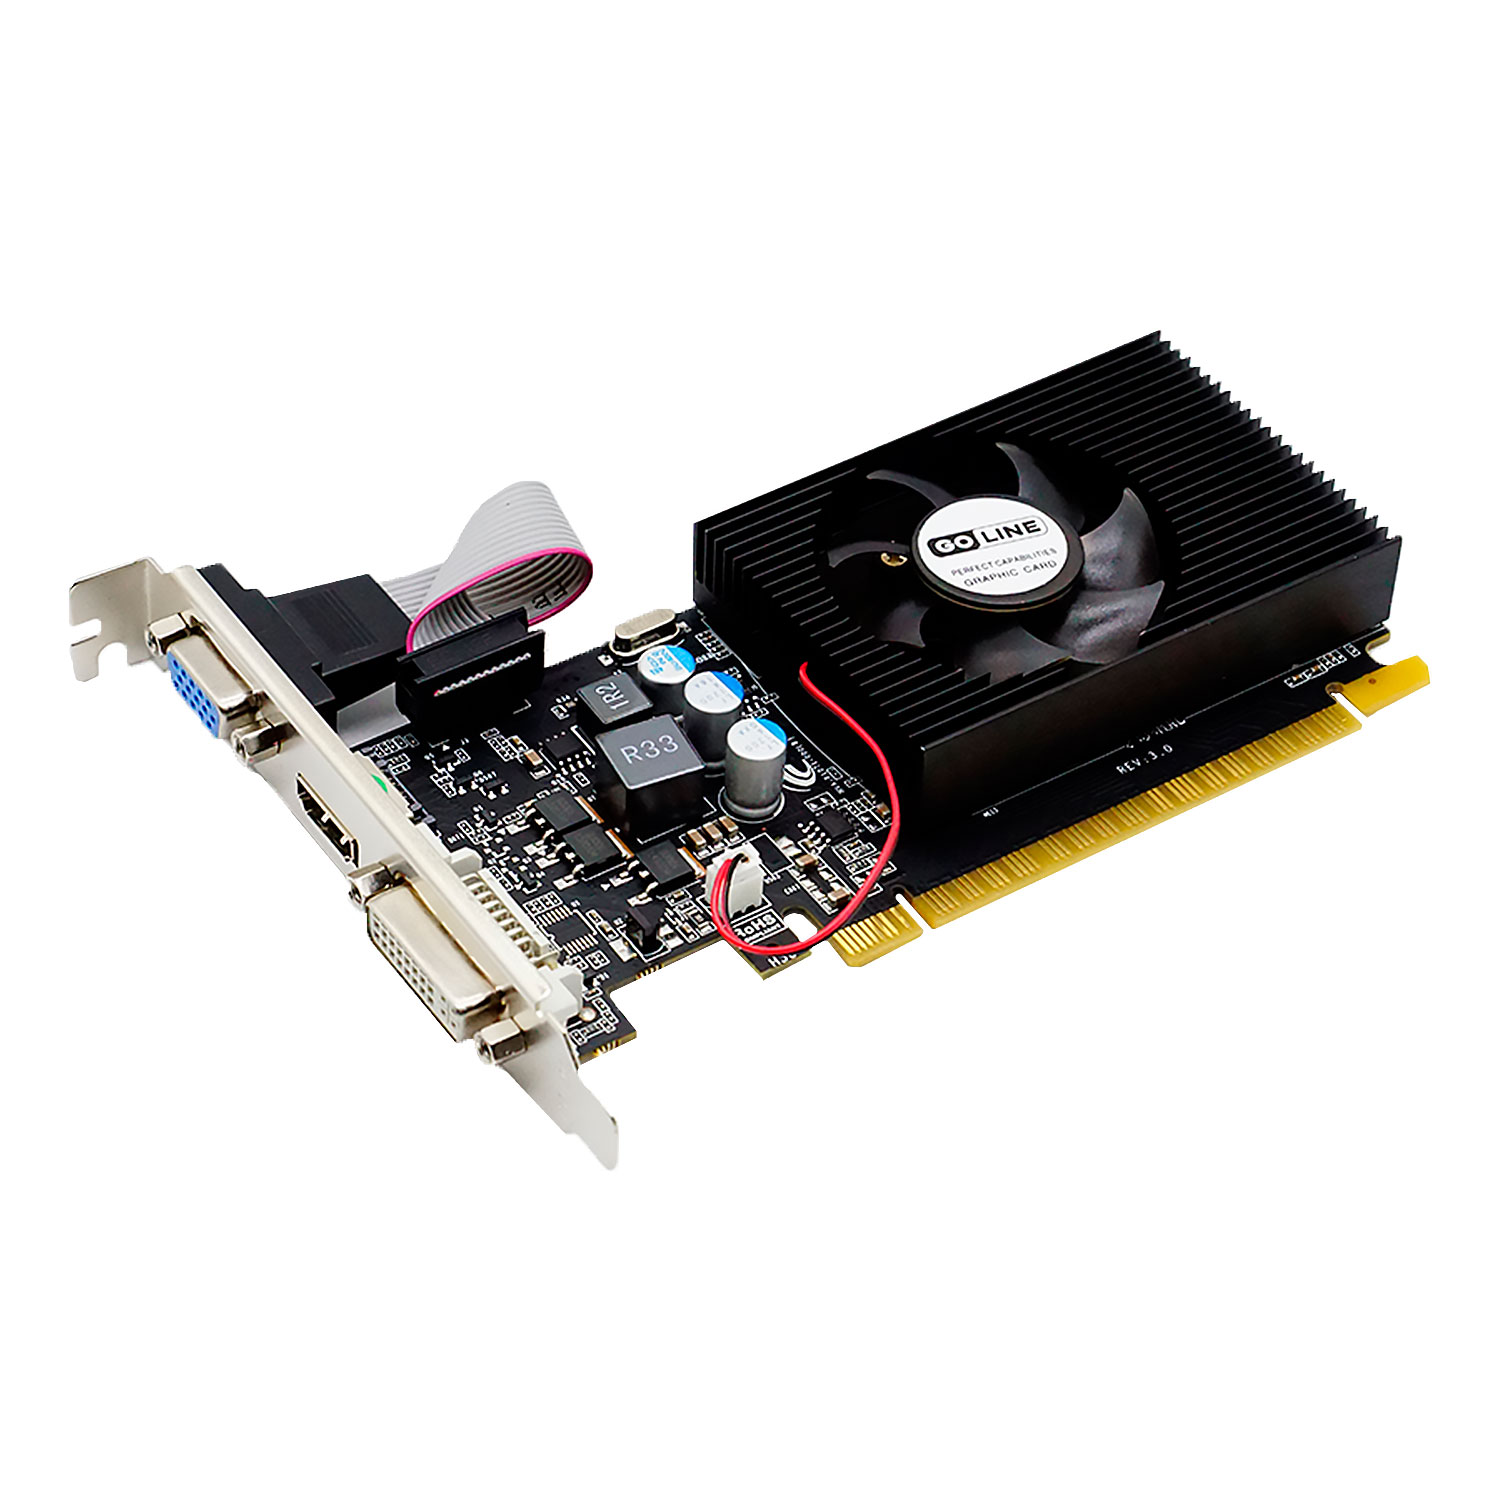 Placa de Vídeo Goline GL GT210 NVIDIA GeForce GT210 1GB GDDR3 - GL-210-1GB-D3 (1 Ano de Garantia)